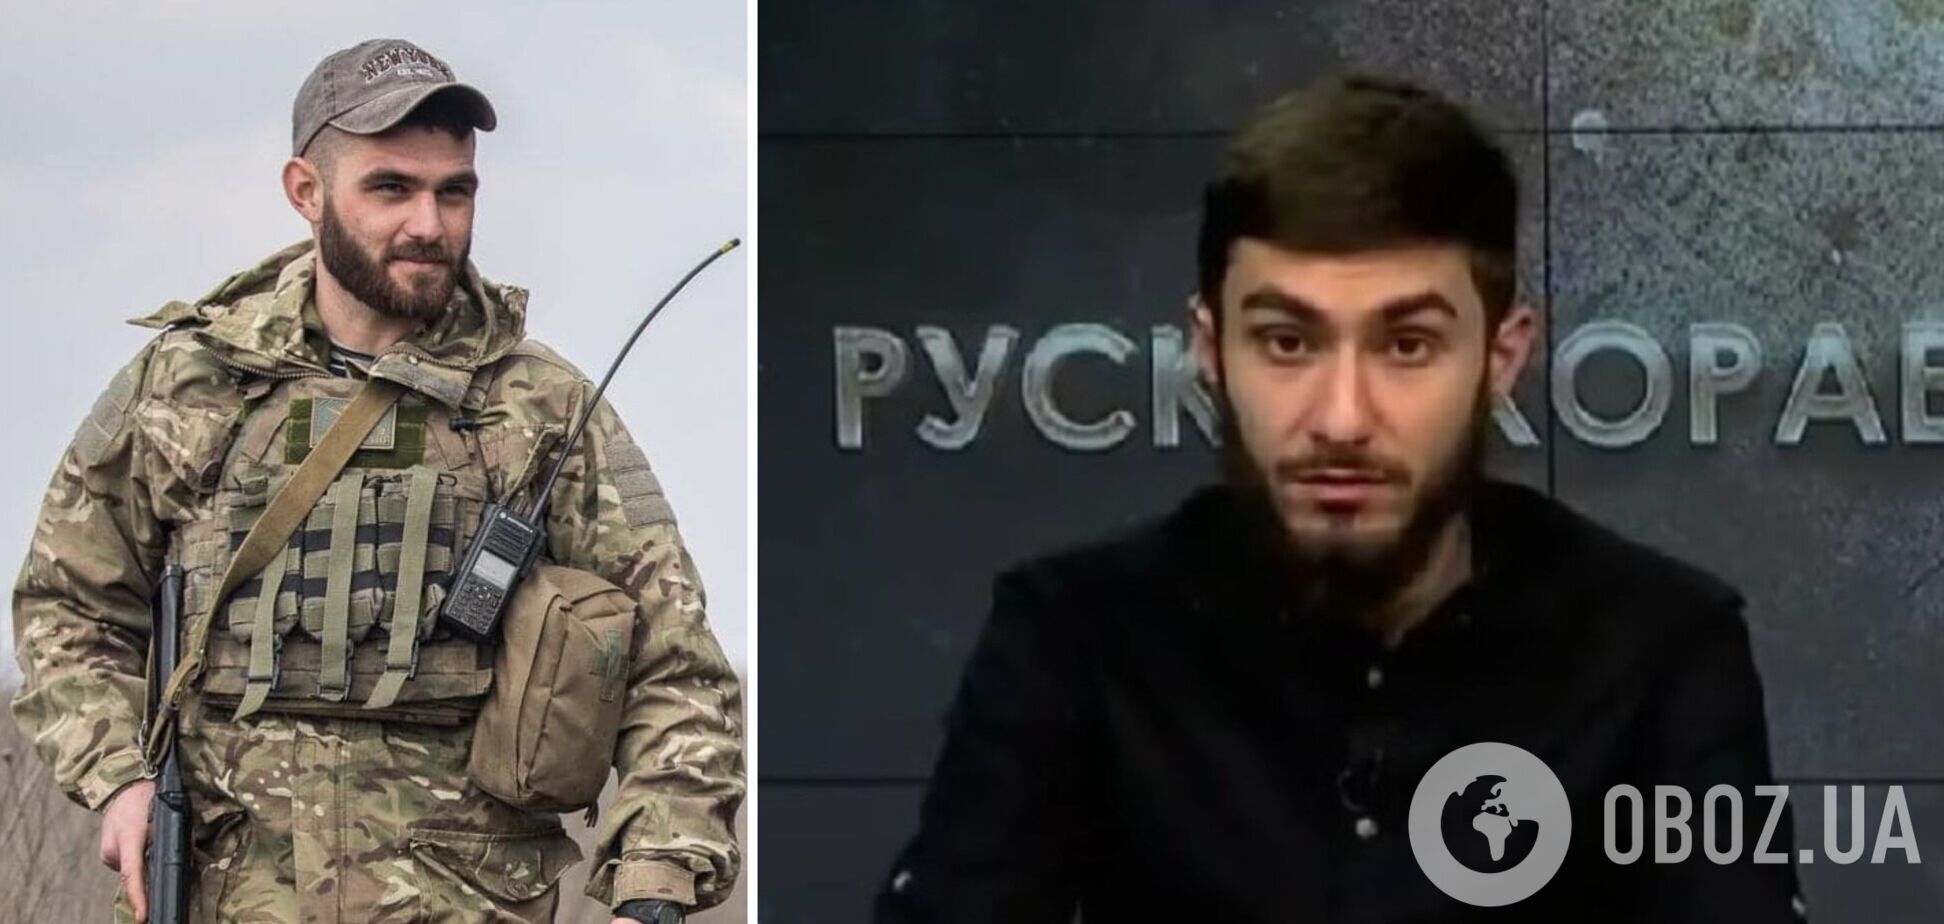 Украинский ведущий, который в прямом эфире призвал убивать российских детей, раскаялся и извинился. Видео